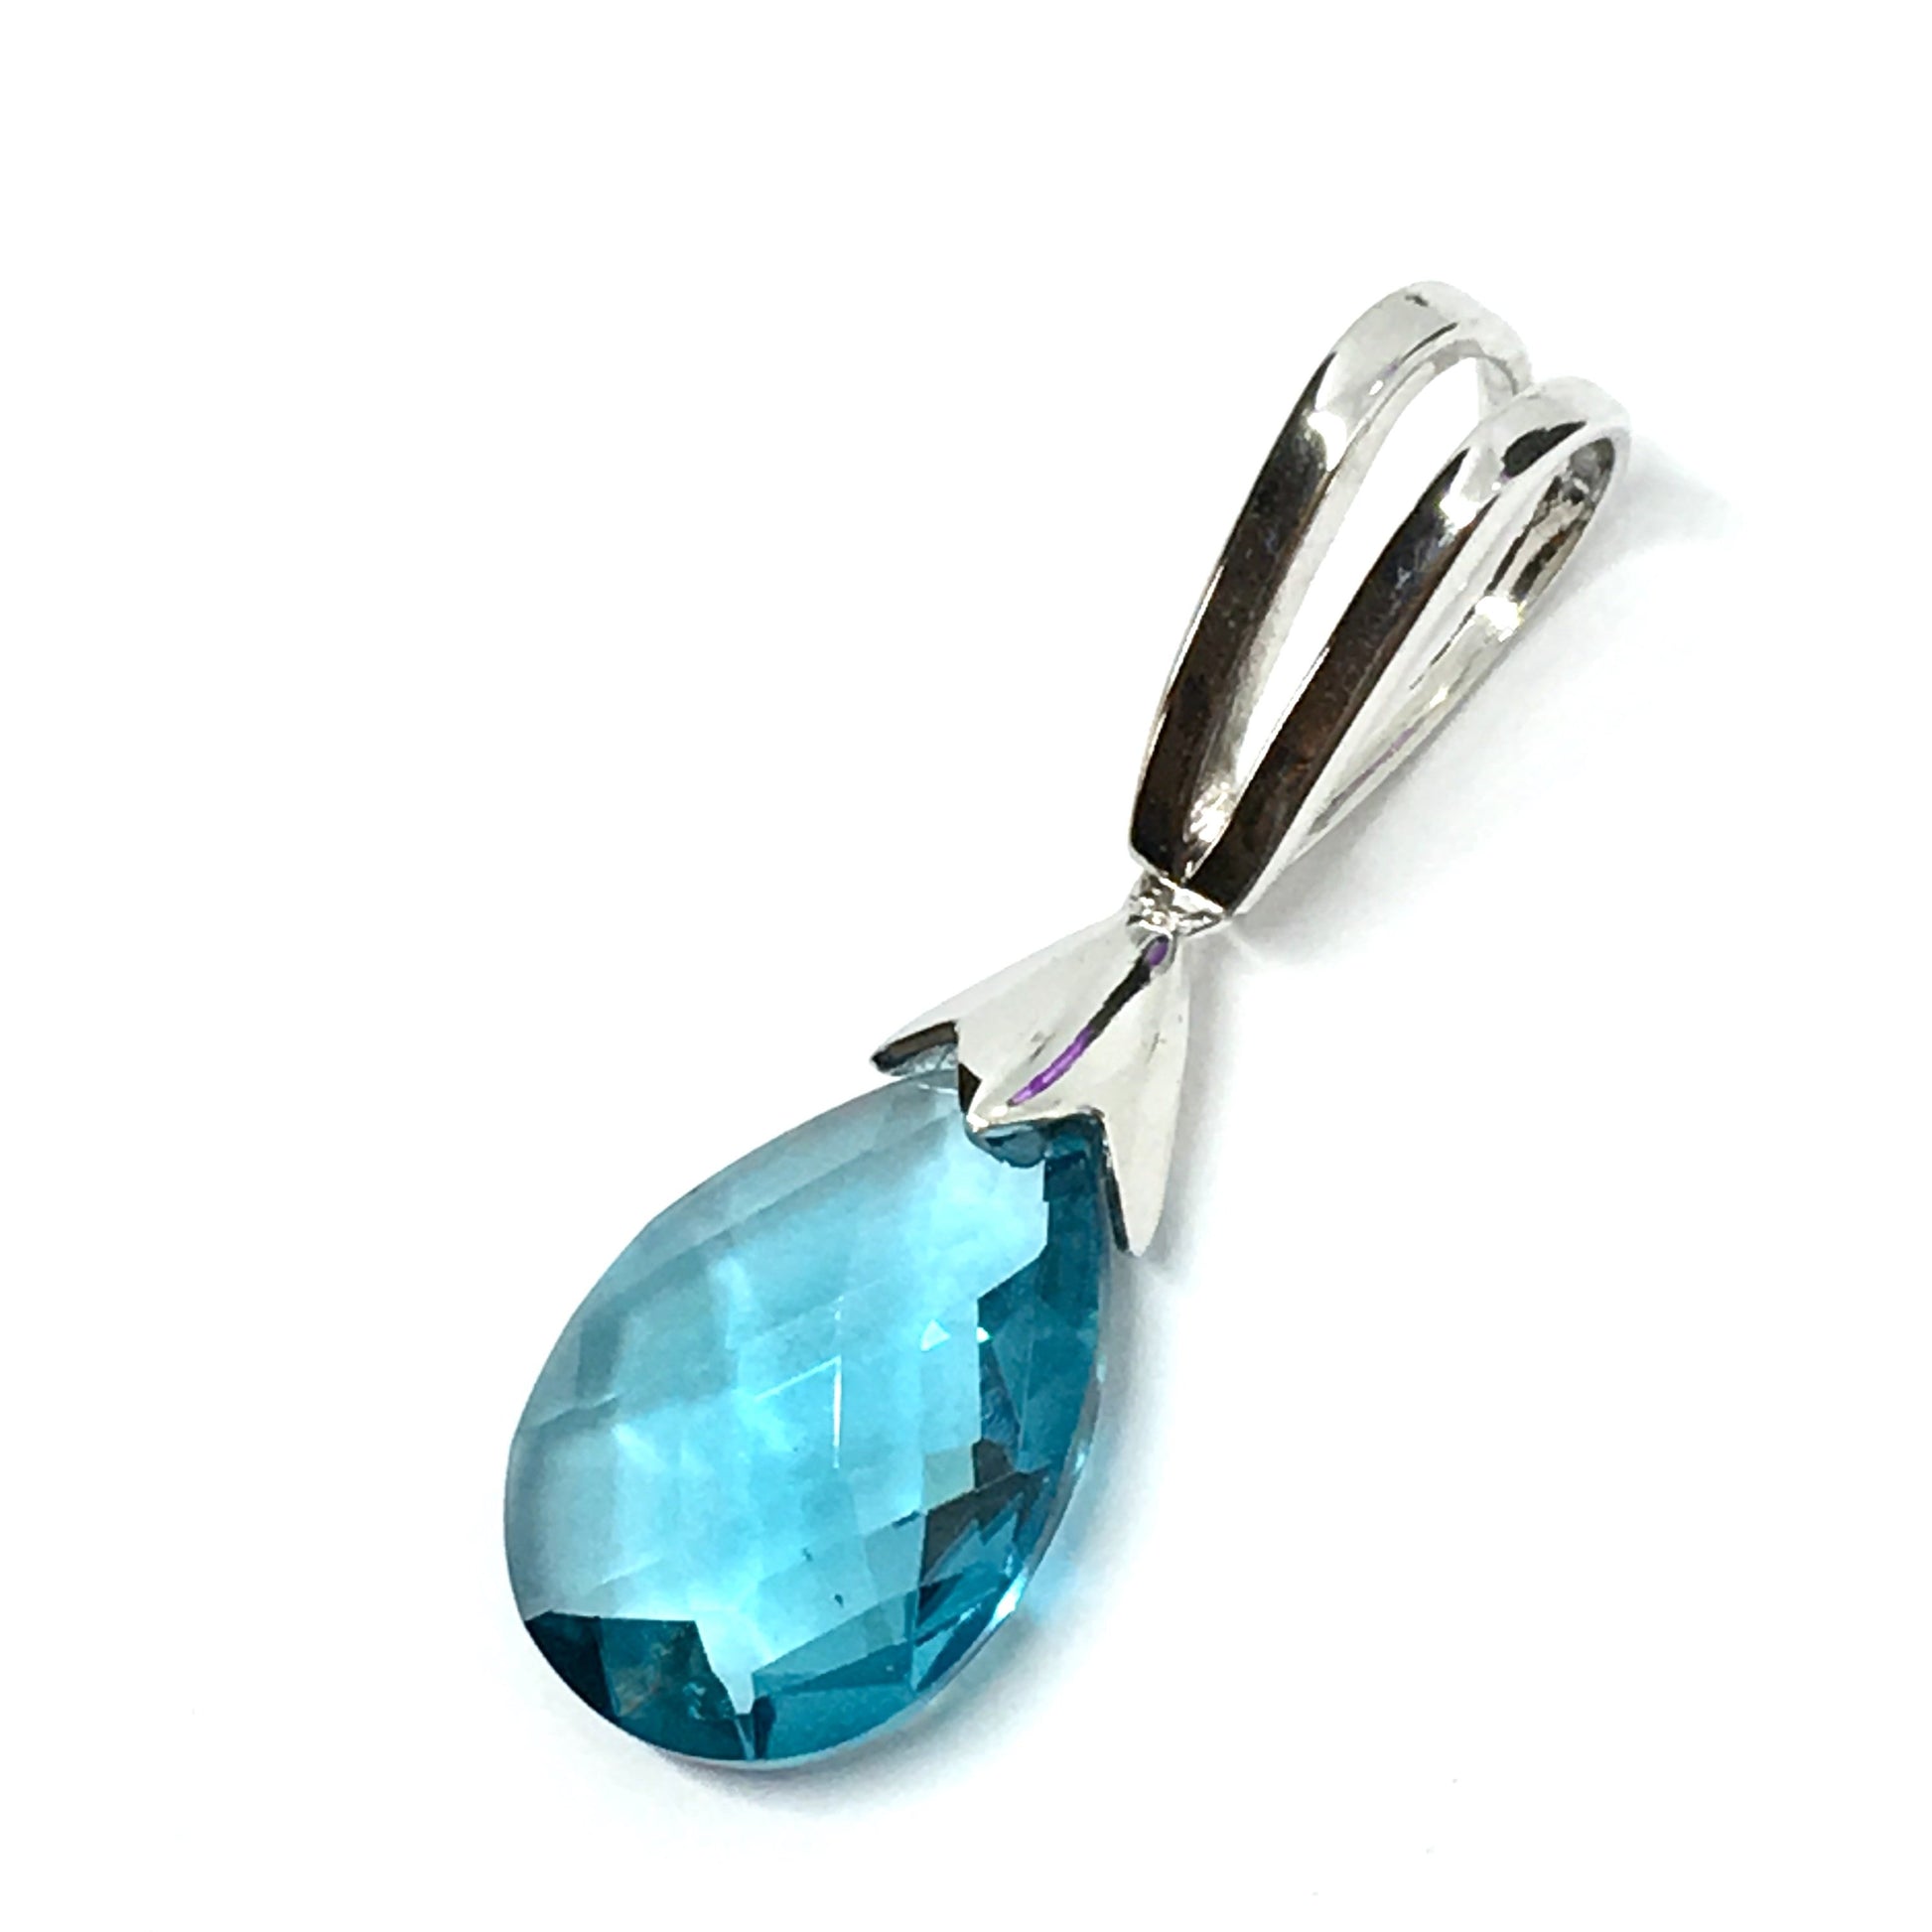 Pendant - Sleek Blue Teardrop Style Sterling Silver Pendant - www.Blingschlingers.com USA